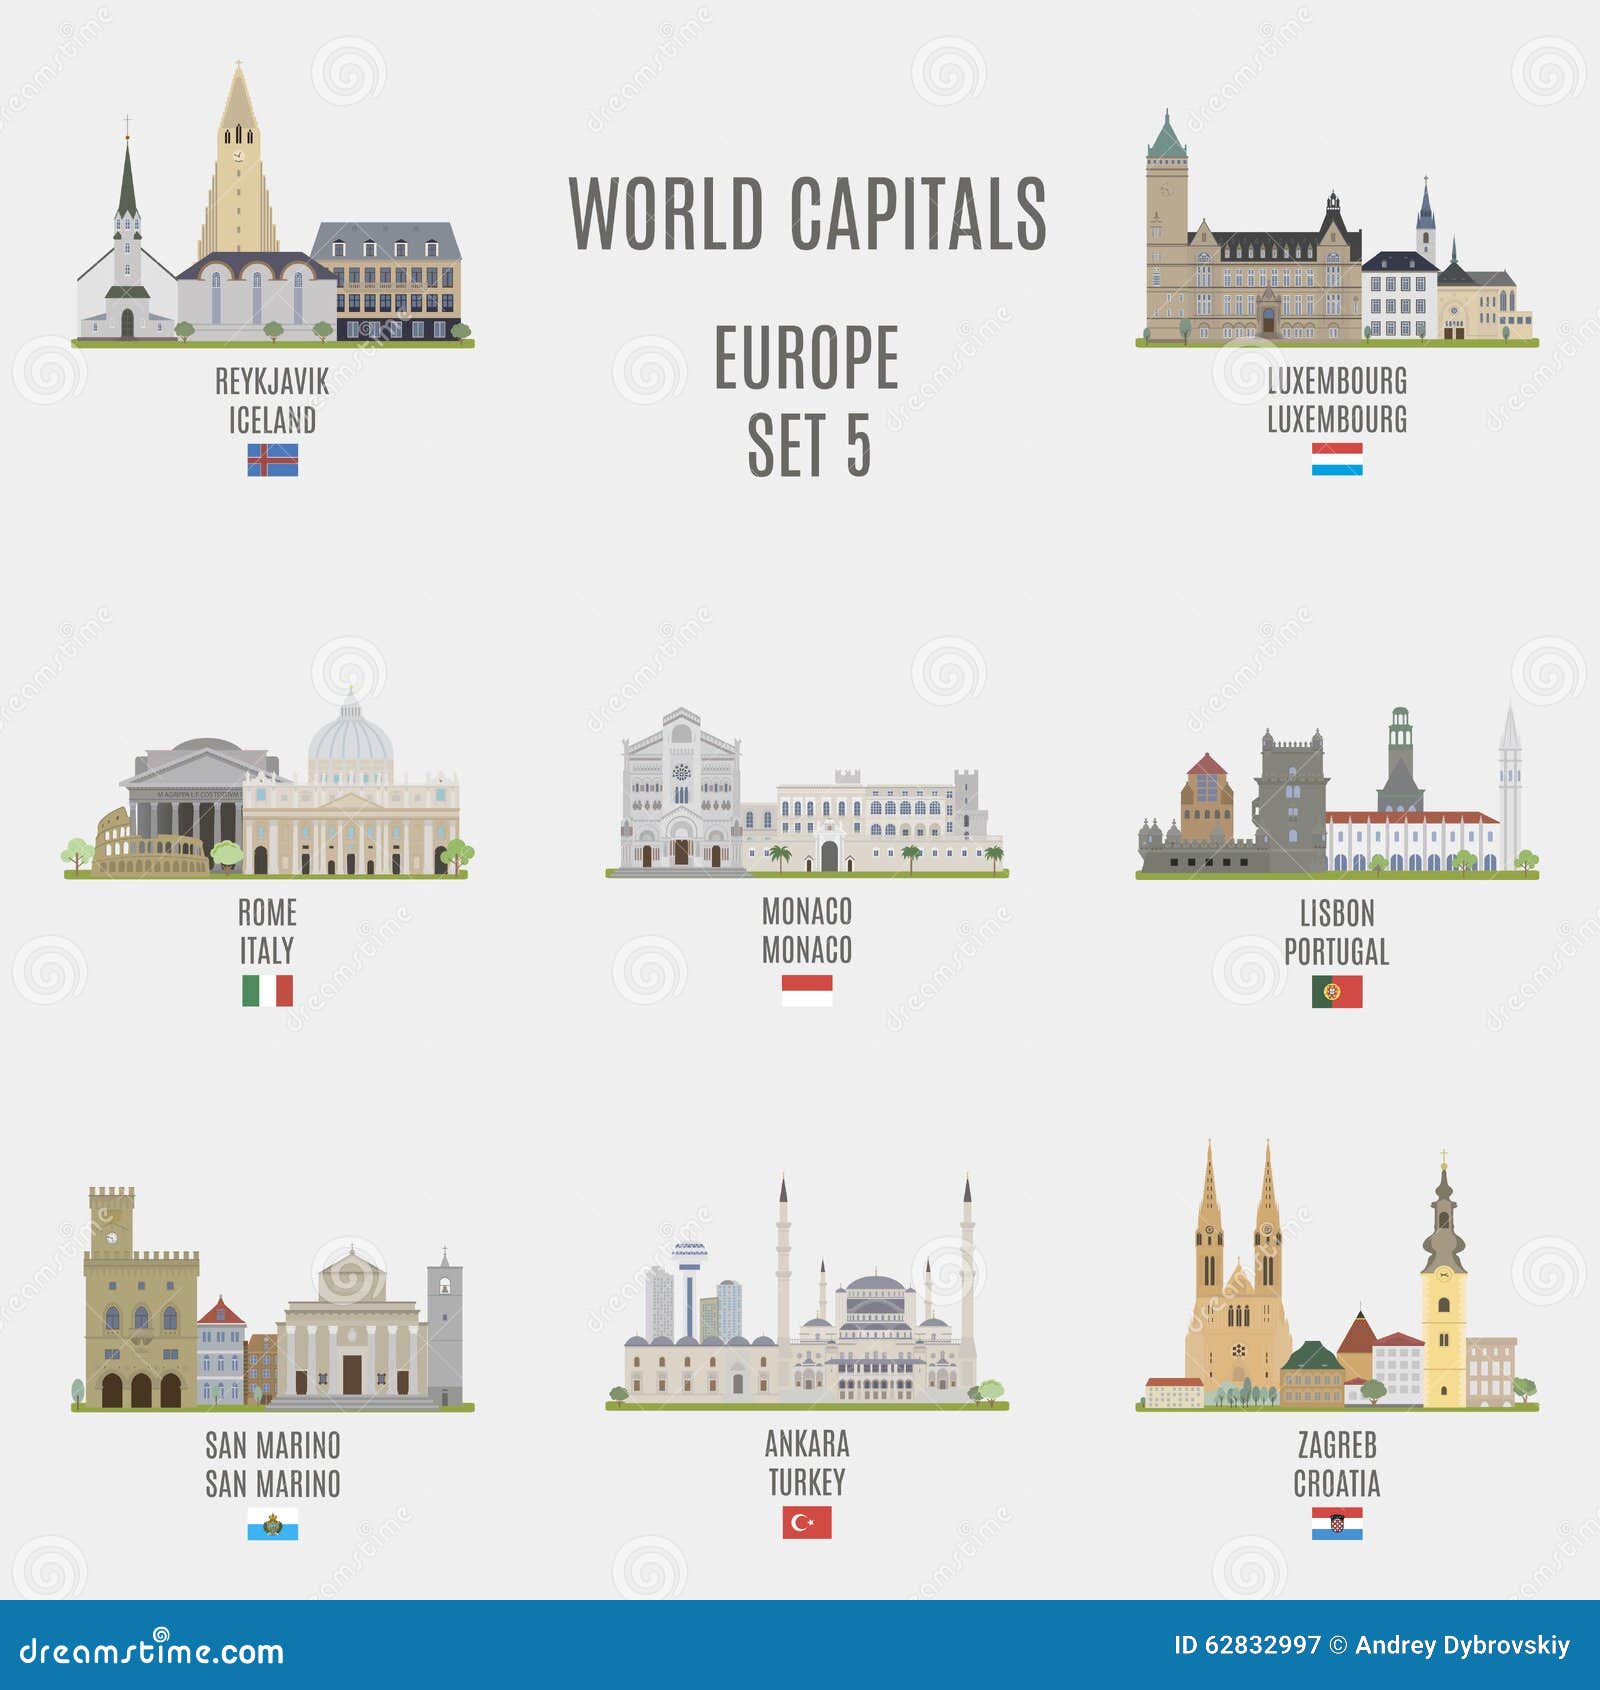 world capitals